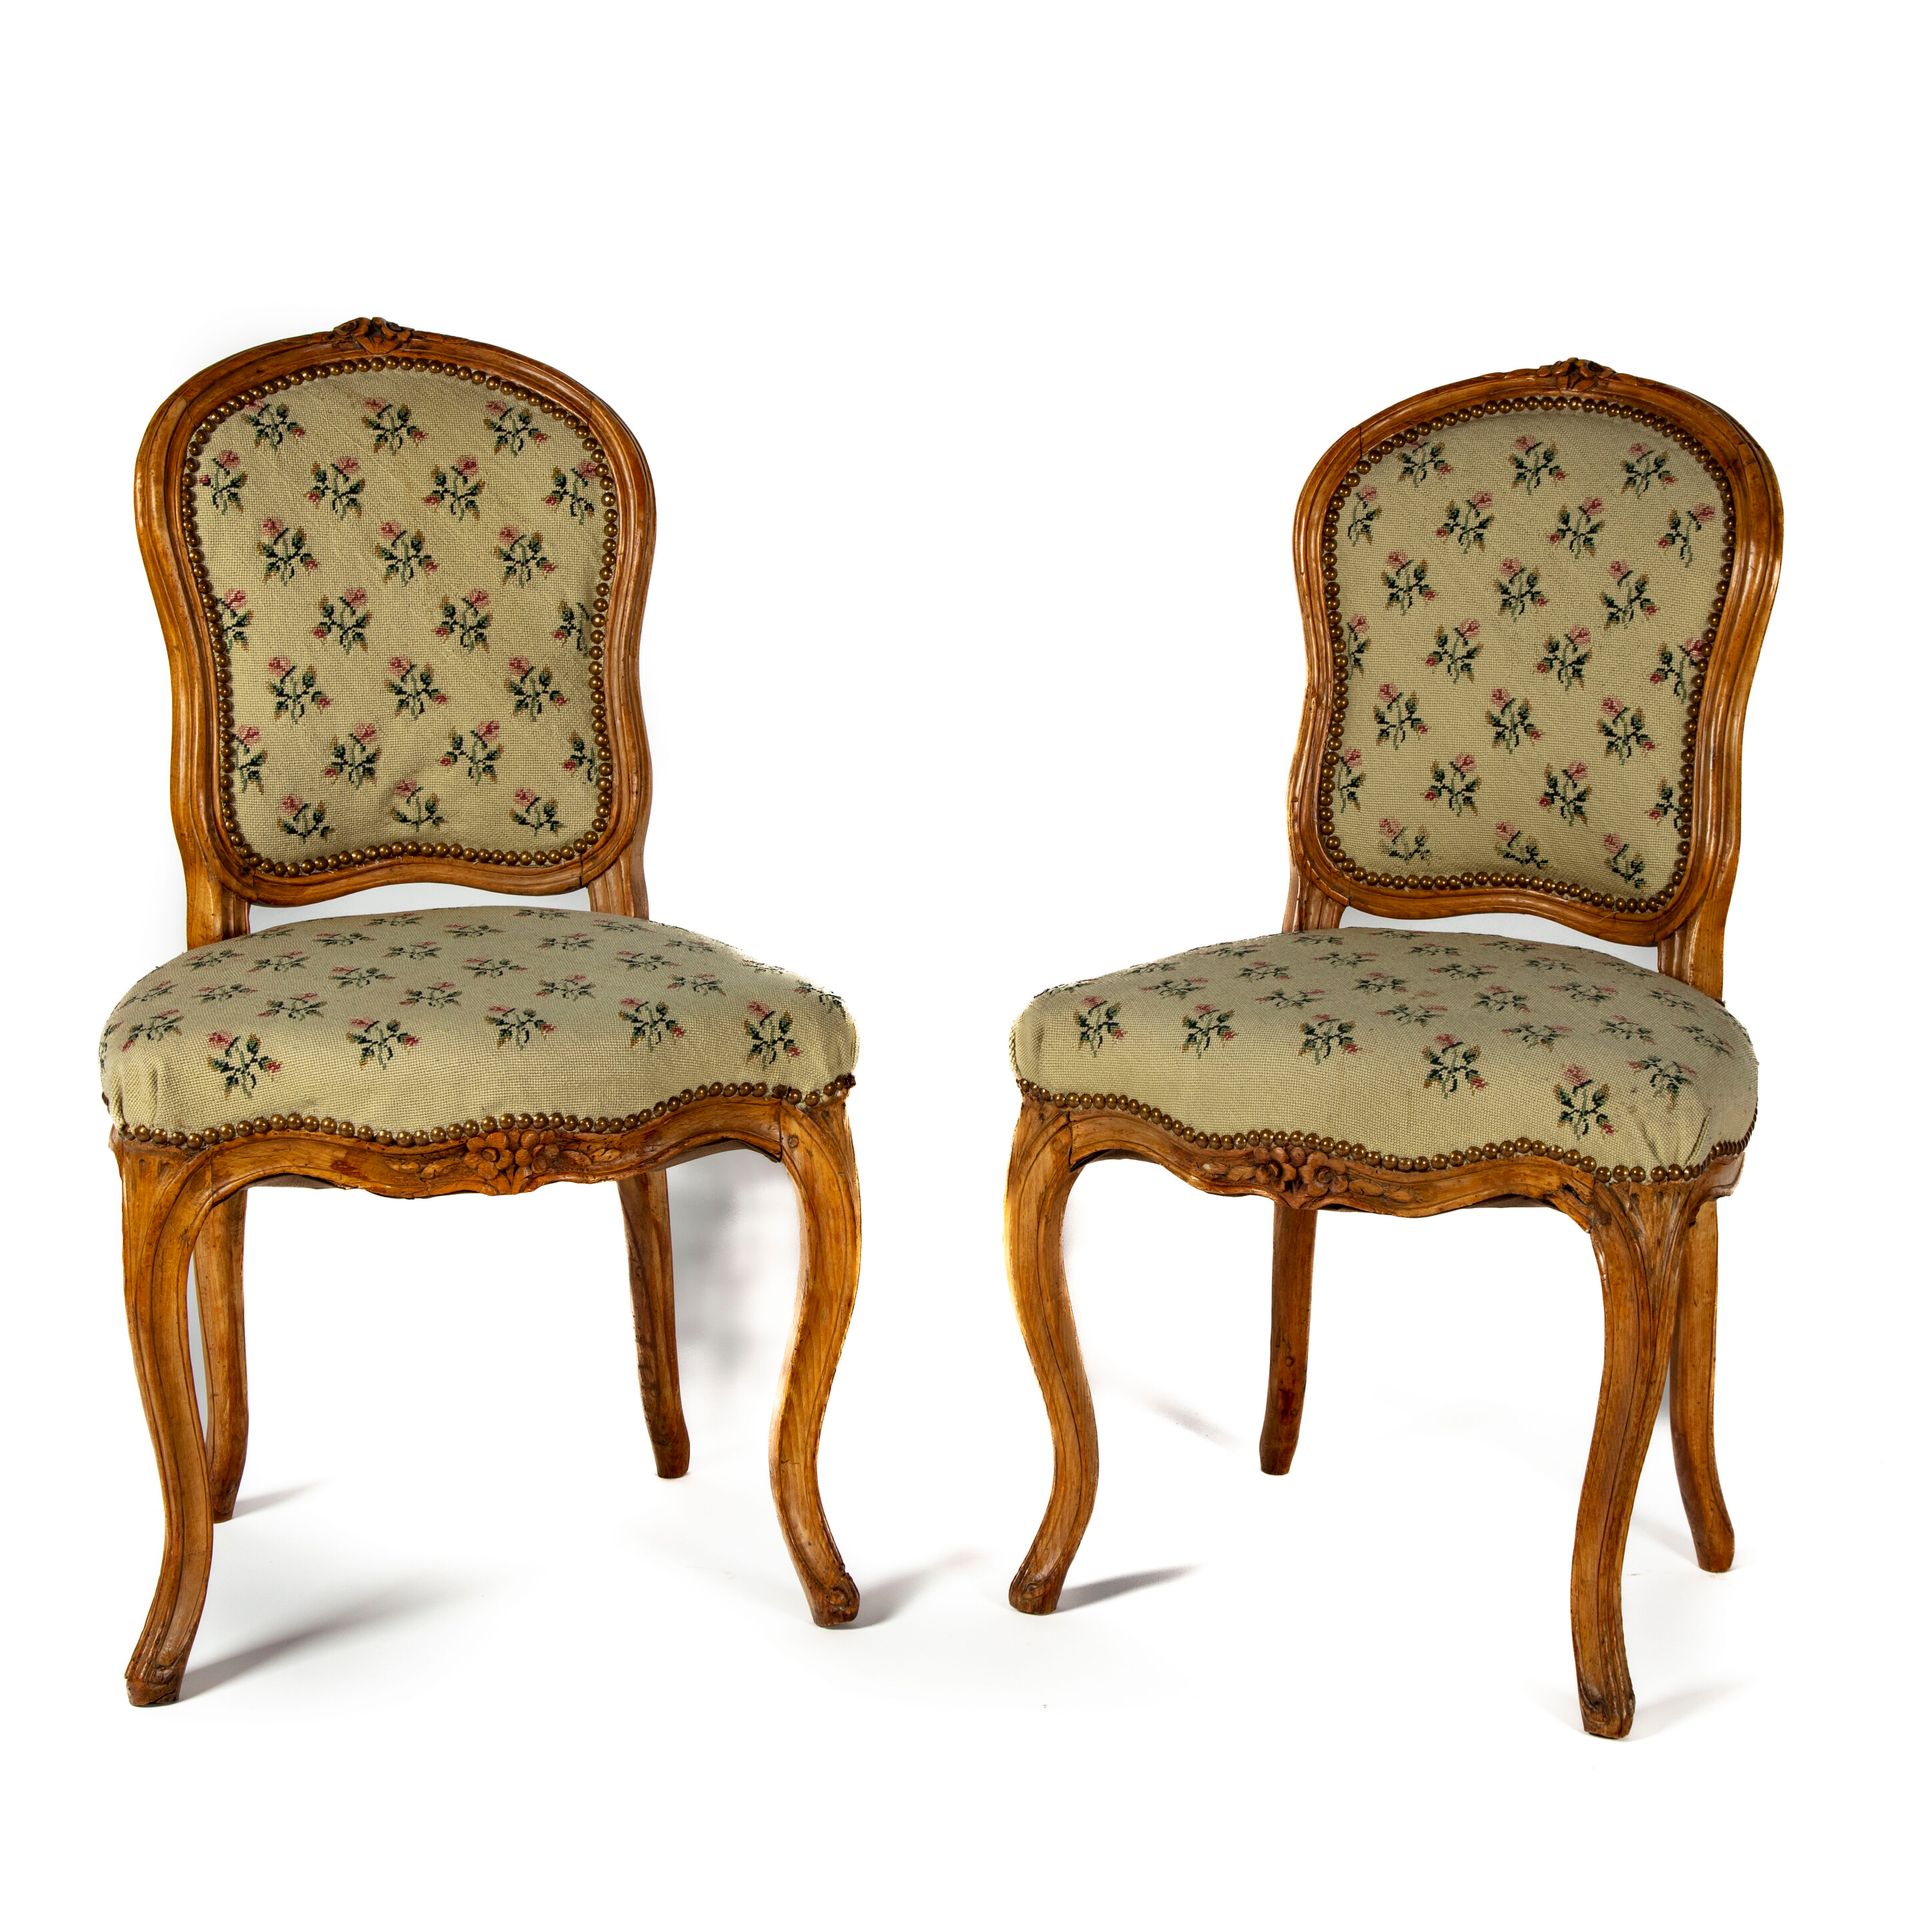 Null 一对天然木制椅子，模制和雕刻有花朵，靠背是运动的，弯曲的腿
路易十五时期的省级作品
修复体和腿部